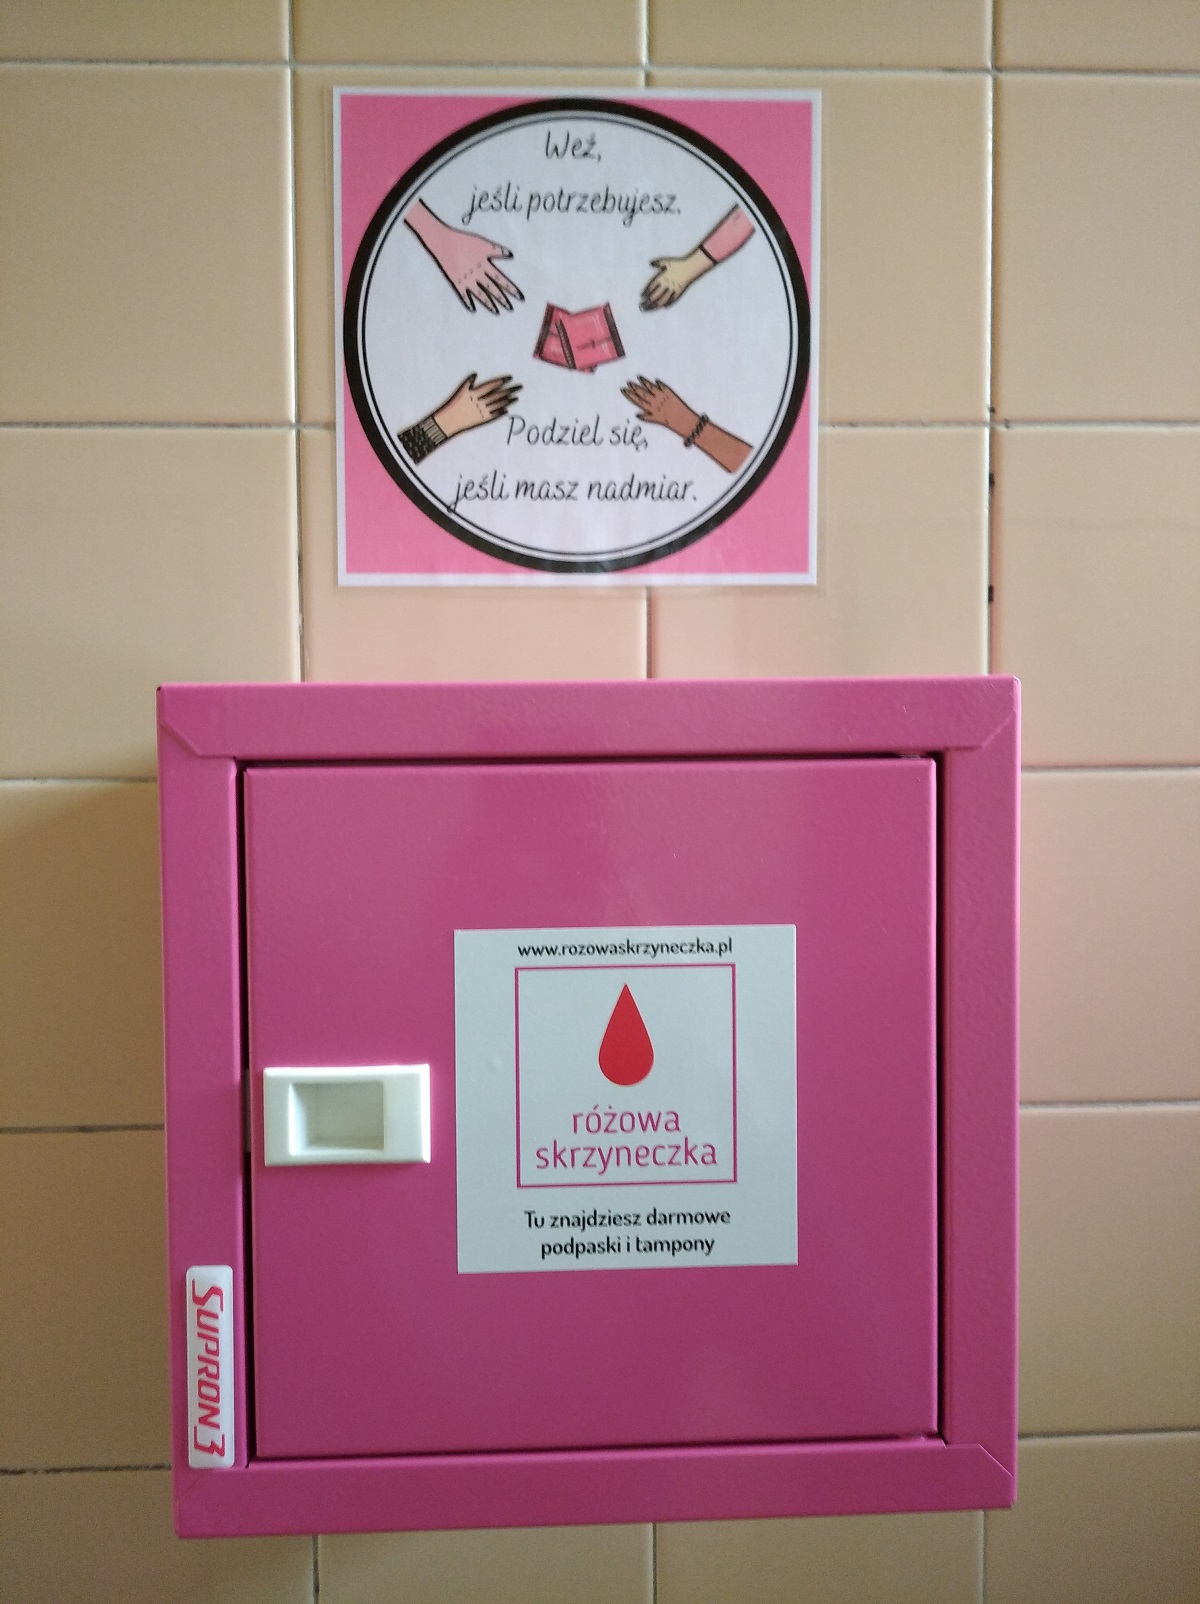 Różowa skrzynka z środkami higienicznymi dla kobiet powieszona na ścianie toalety